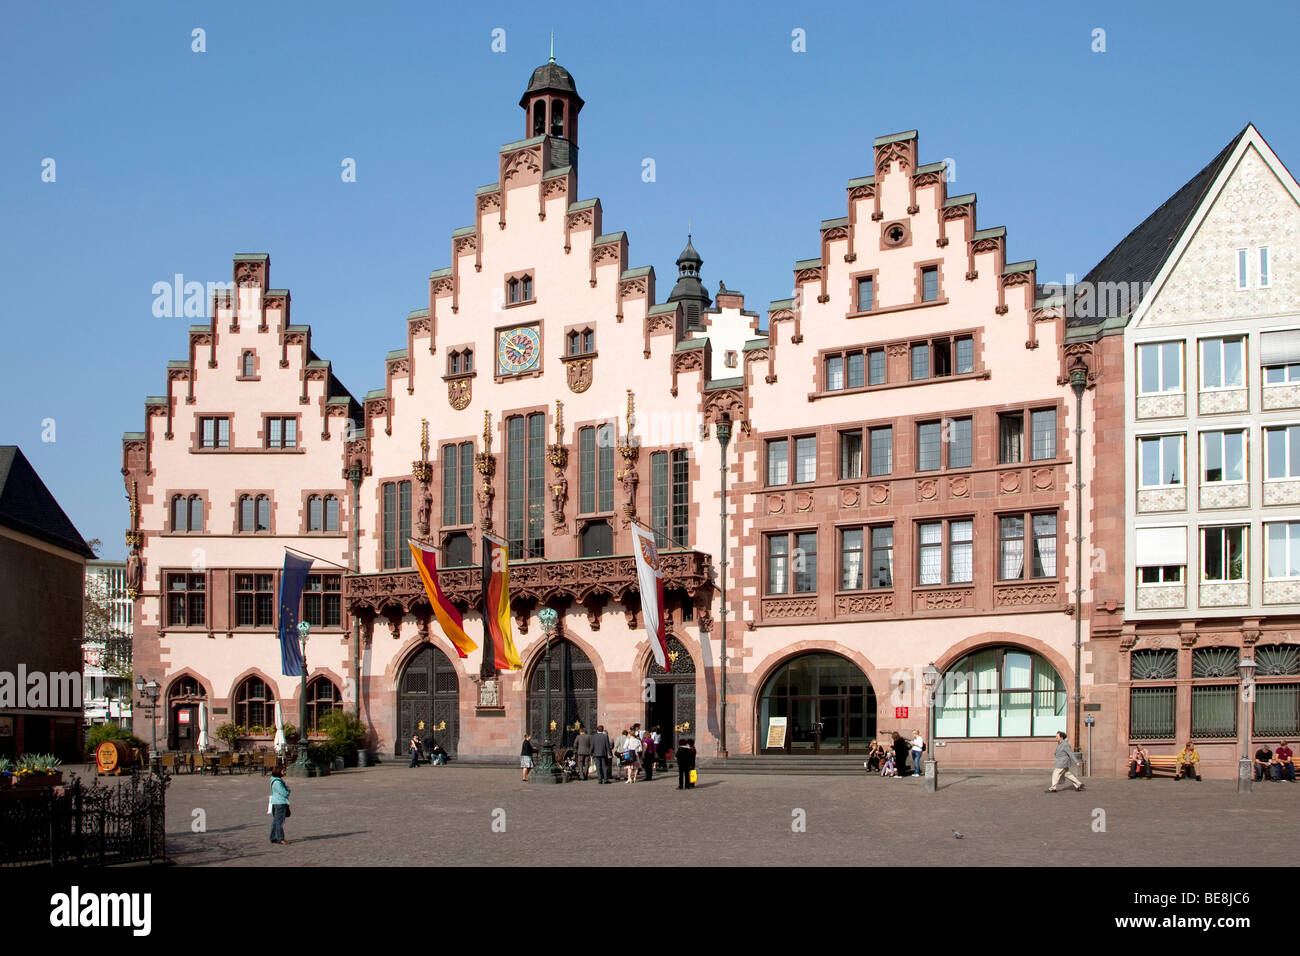 Hôtel de ville historique Roemer, Roman à Roemerberg square à Frankfurt am Main, Hesse, Germany, Europe Banque D'Images